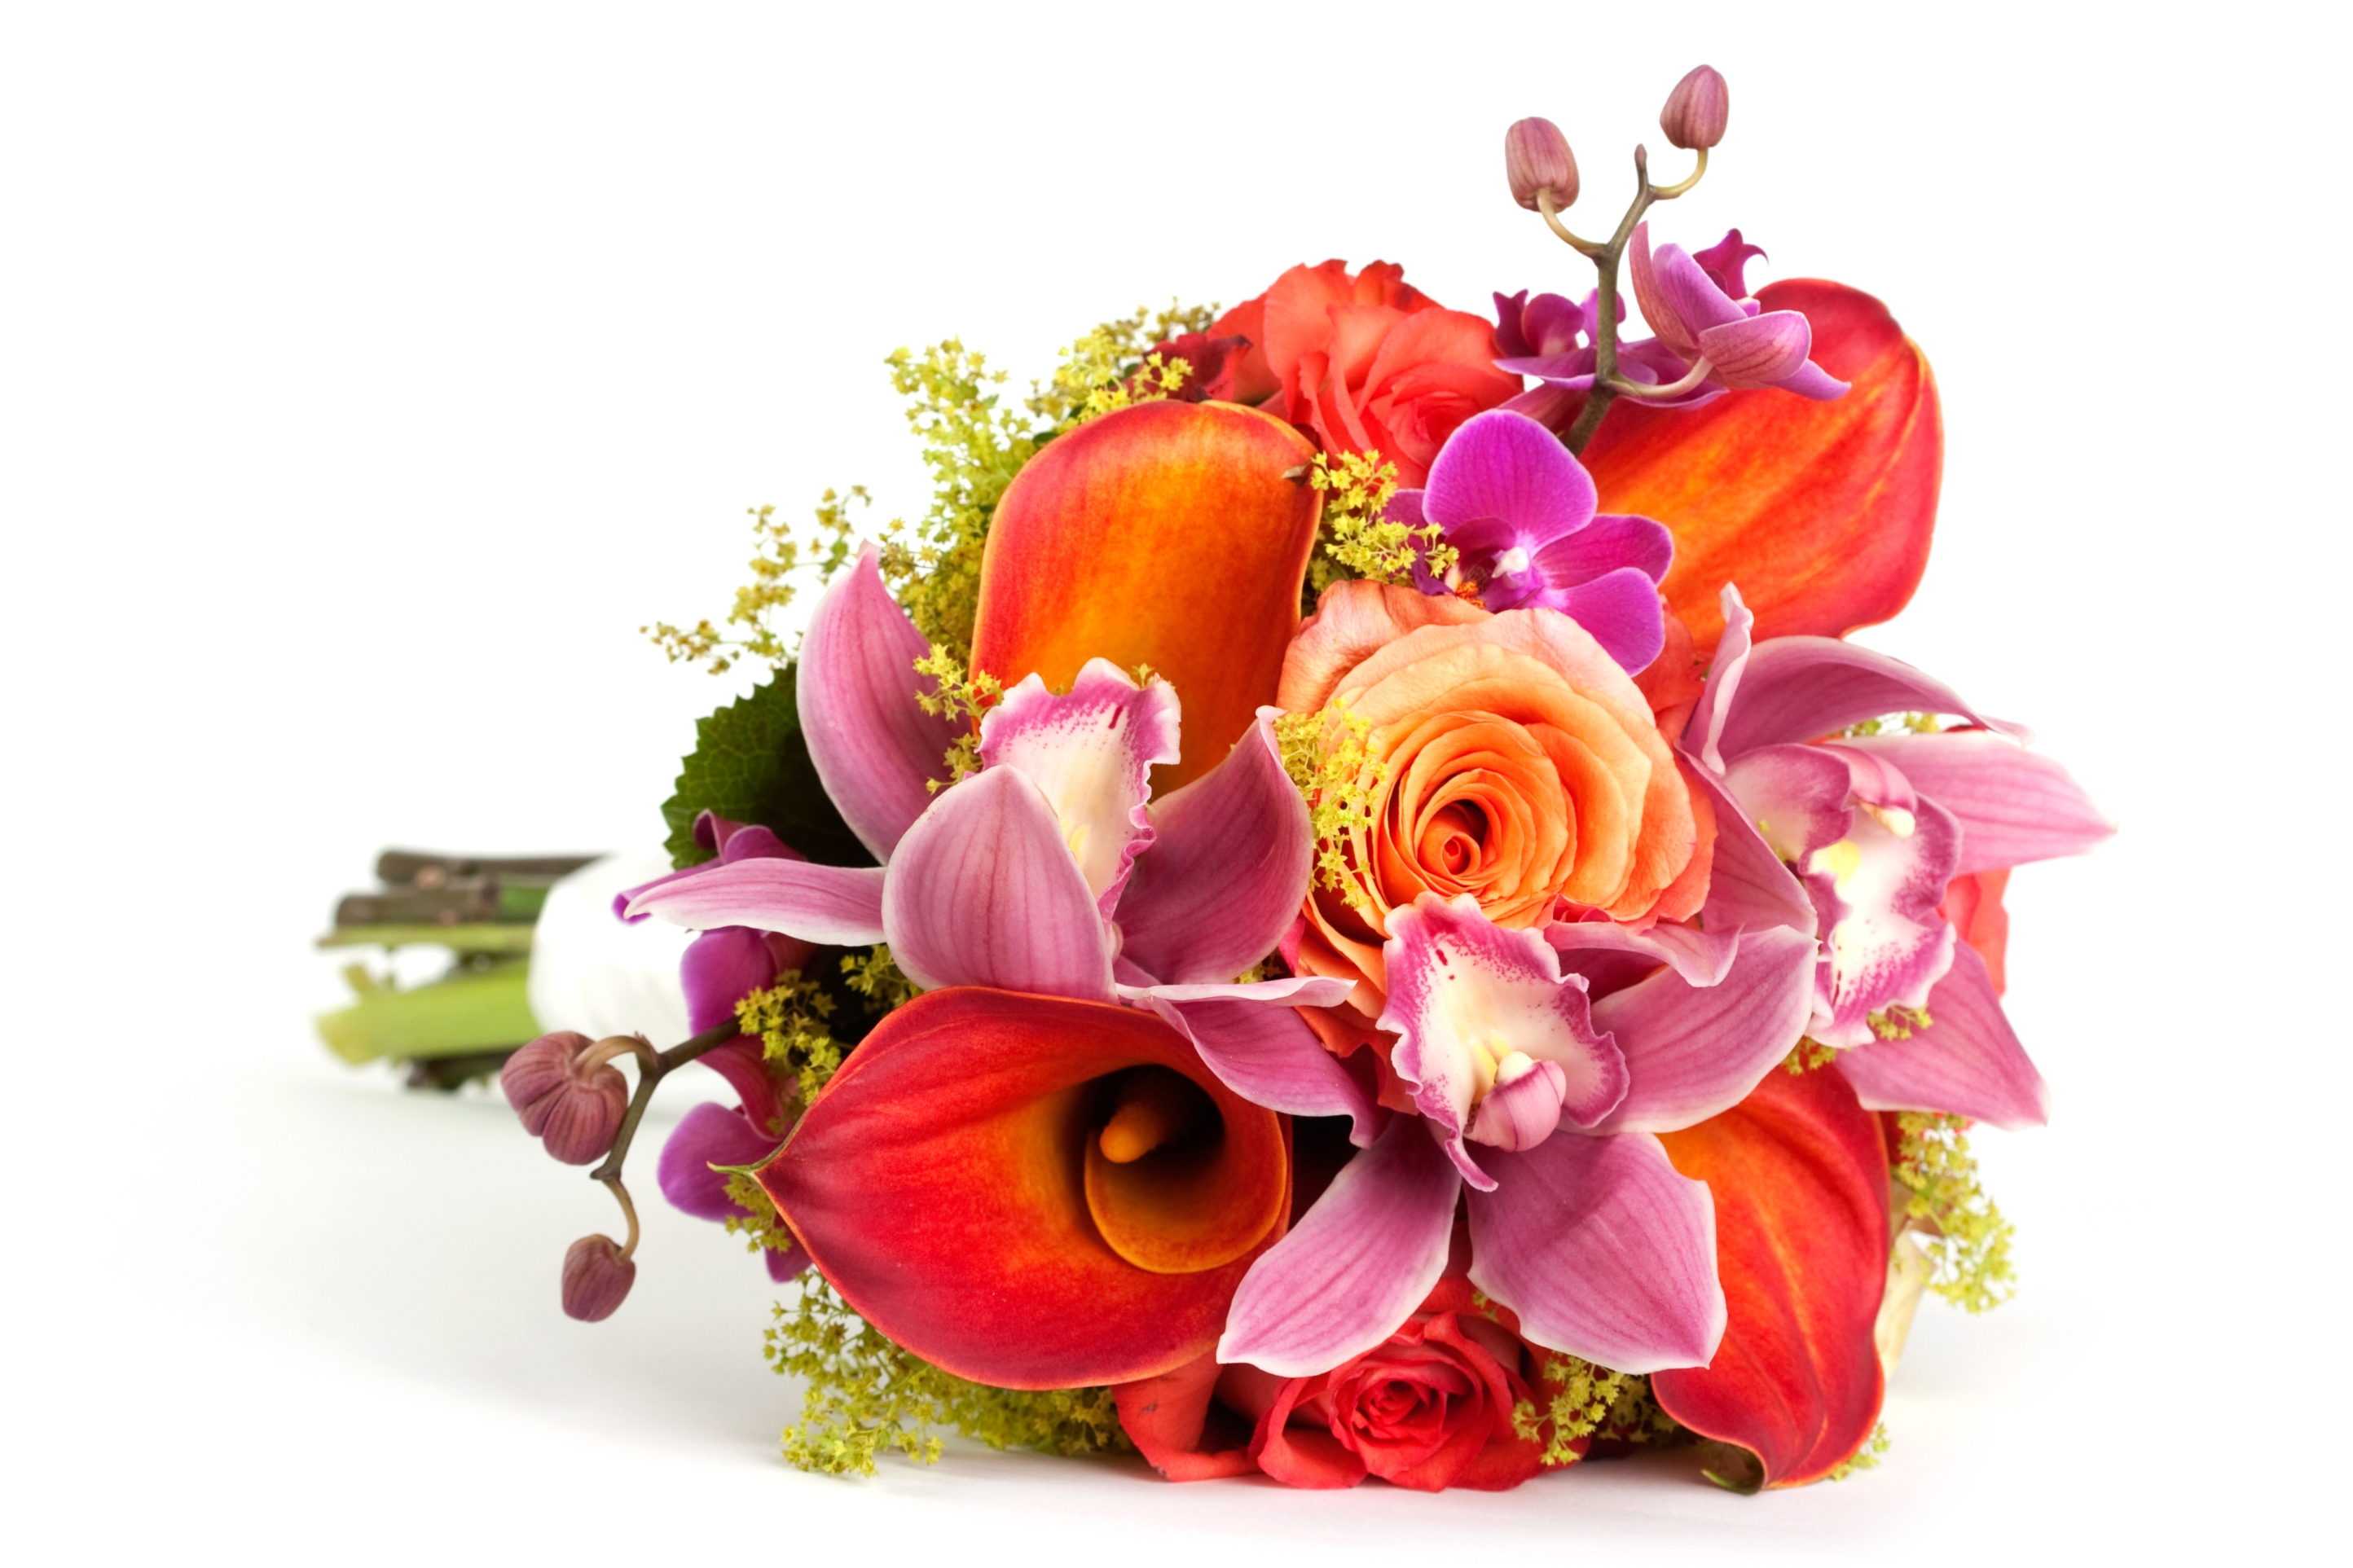 Svatba bez květin jako by nebyla. Kytice totiž tvoří jednu z hlavních ozdob nevěsty.